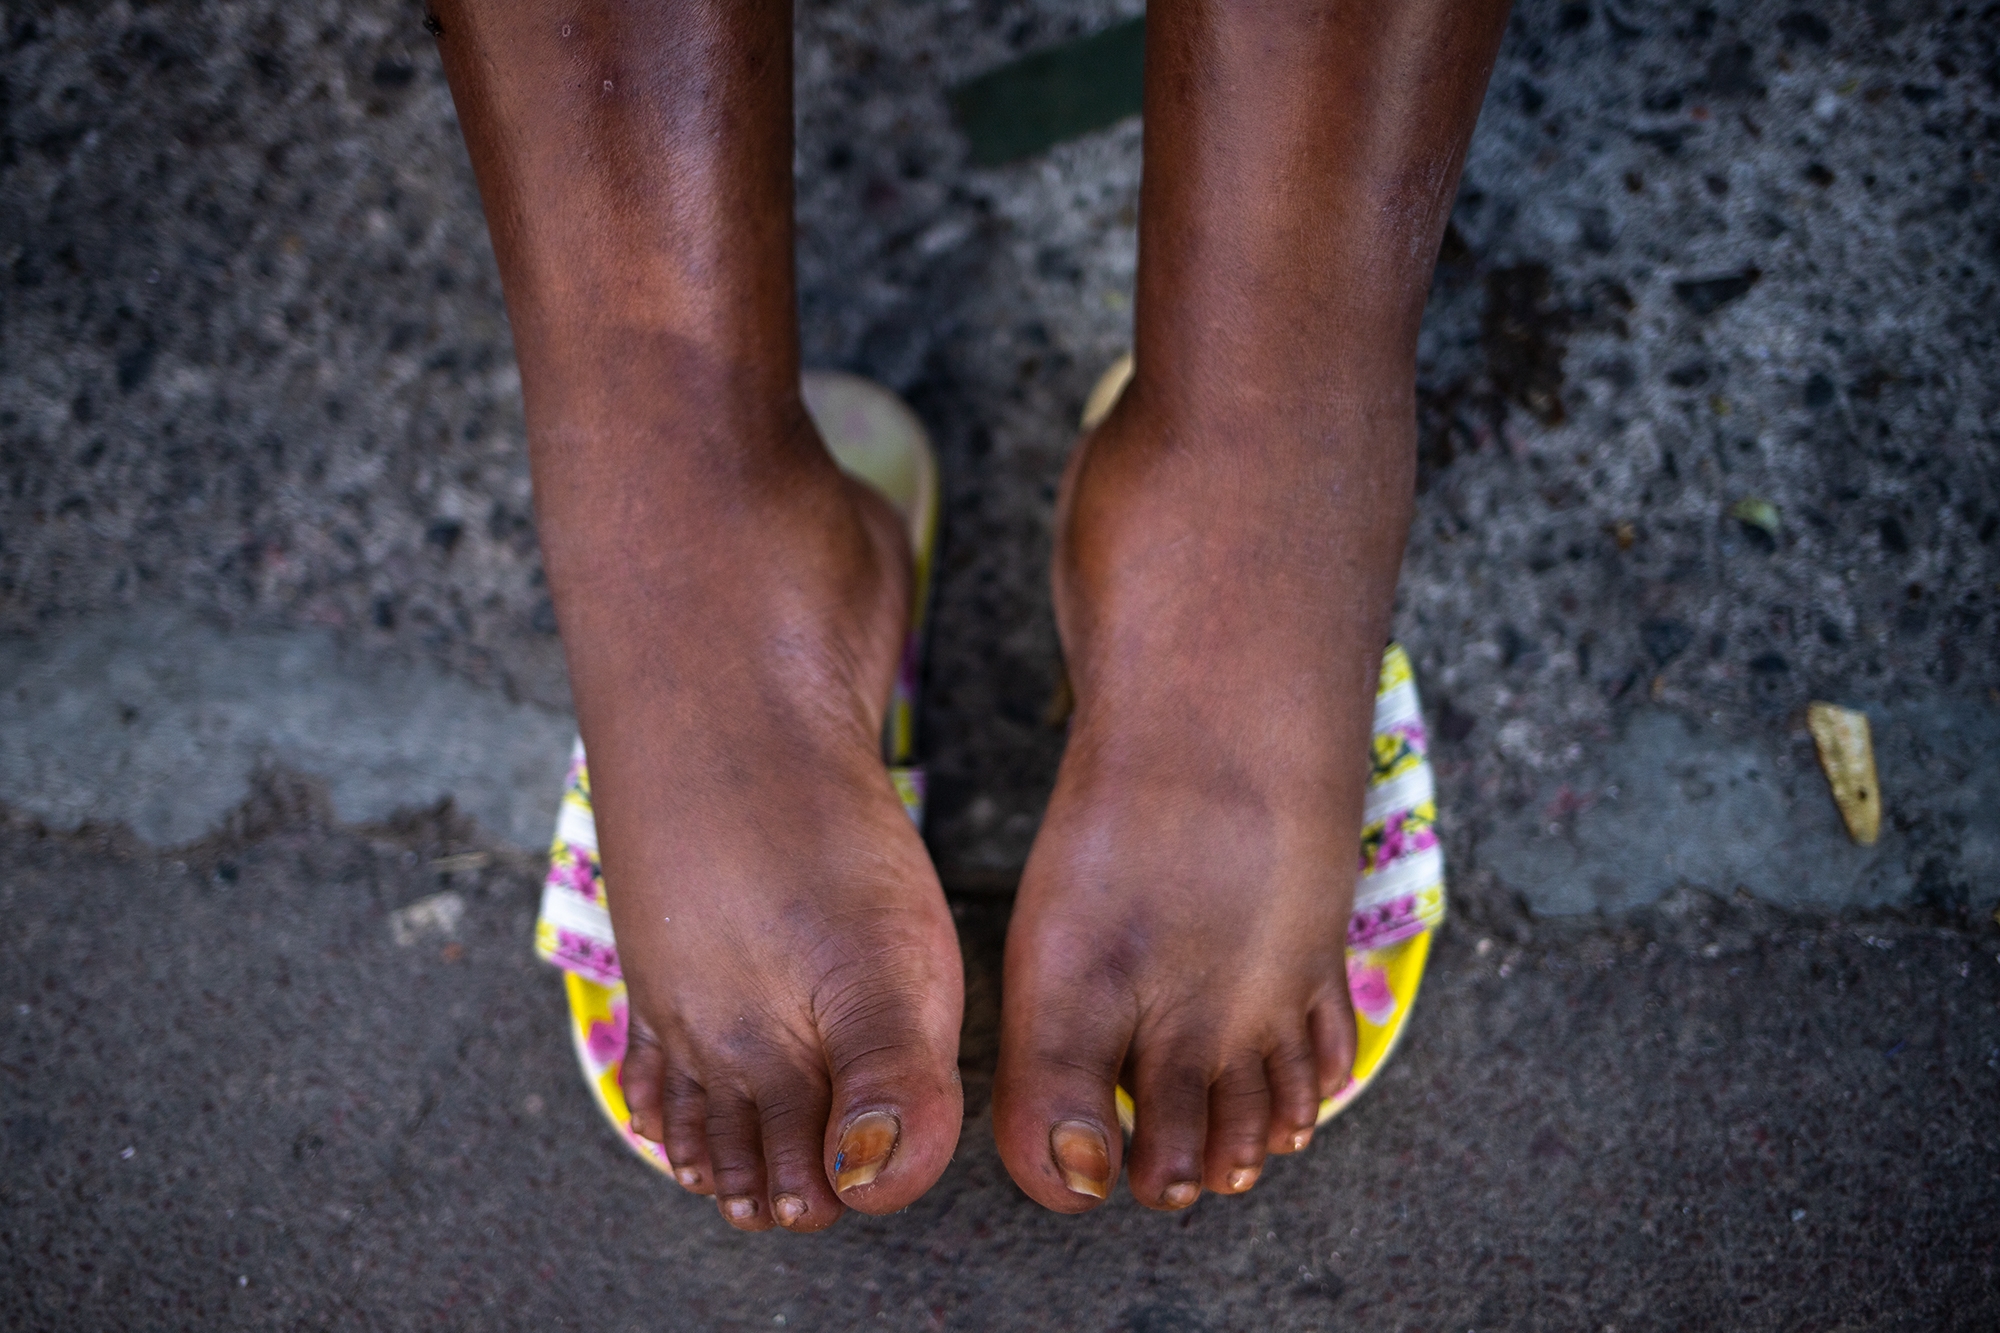 Con 25 años de edad y 8 meses de embarazo, la haitiana Edlin anduvo durante cinco días con los pies inflamados. Comayagüela, 26 de octubre de 2021. Foto: Martín Cálix.